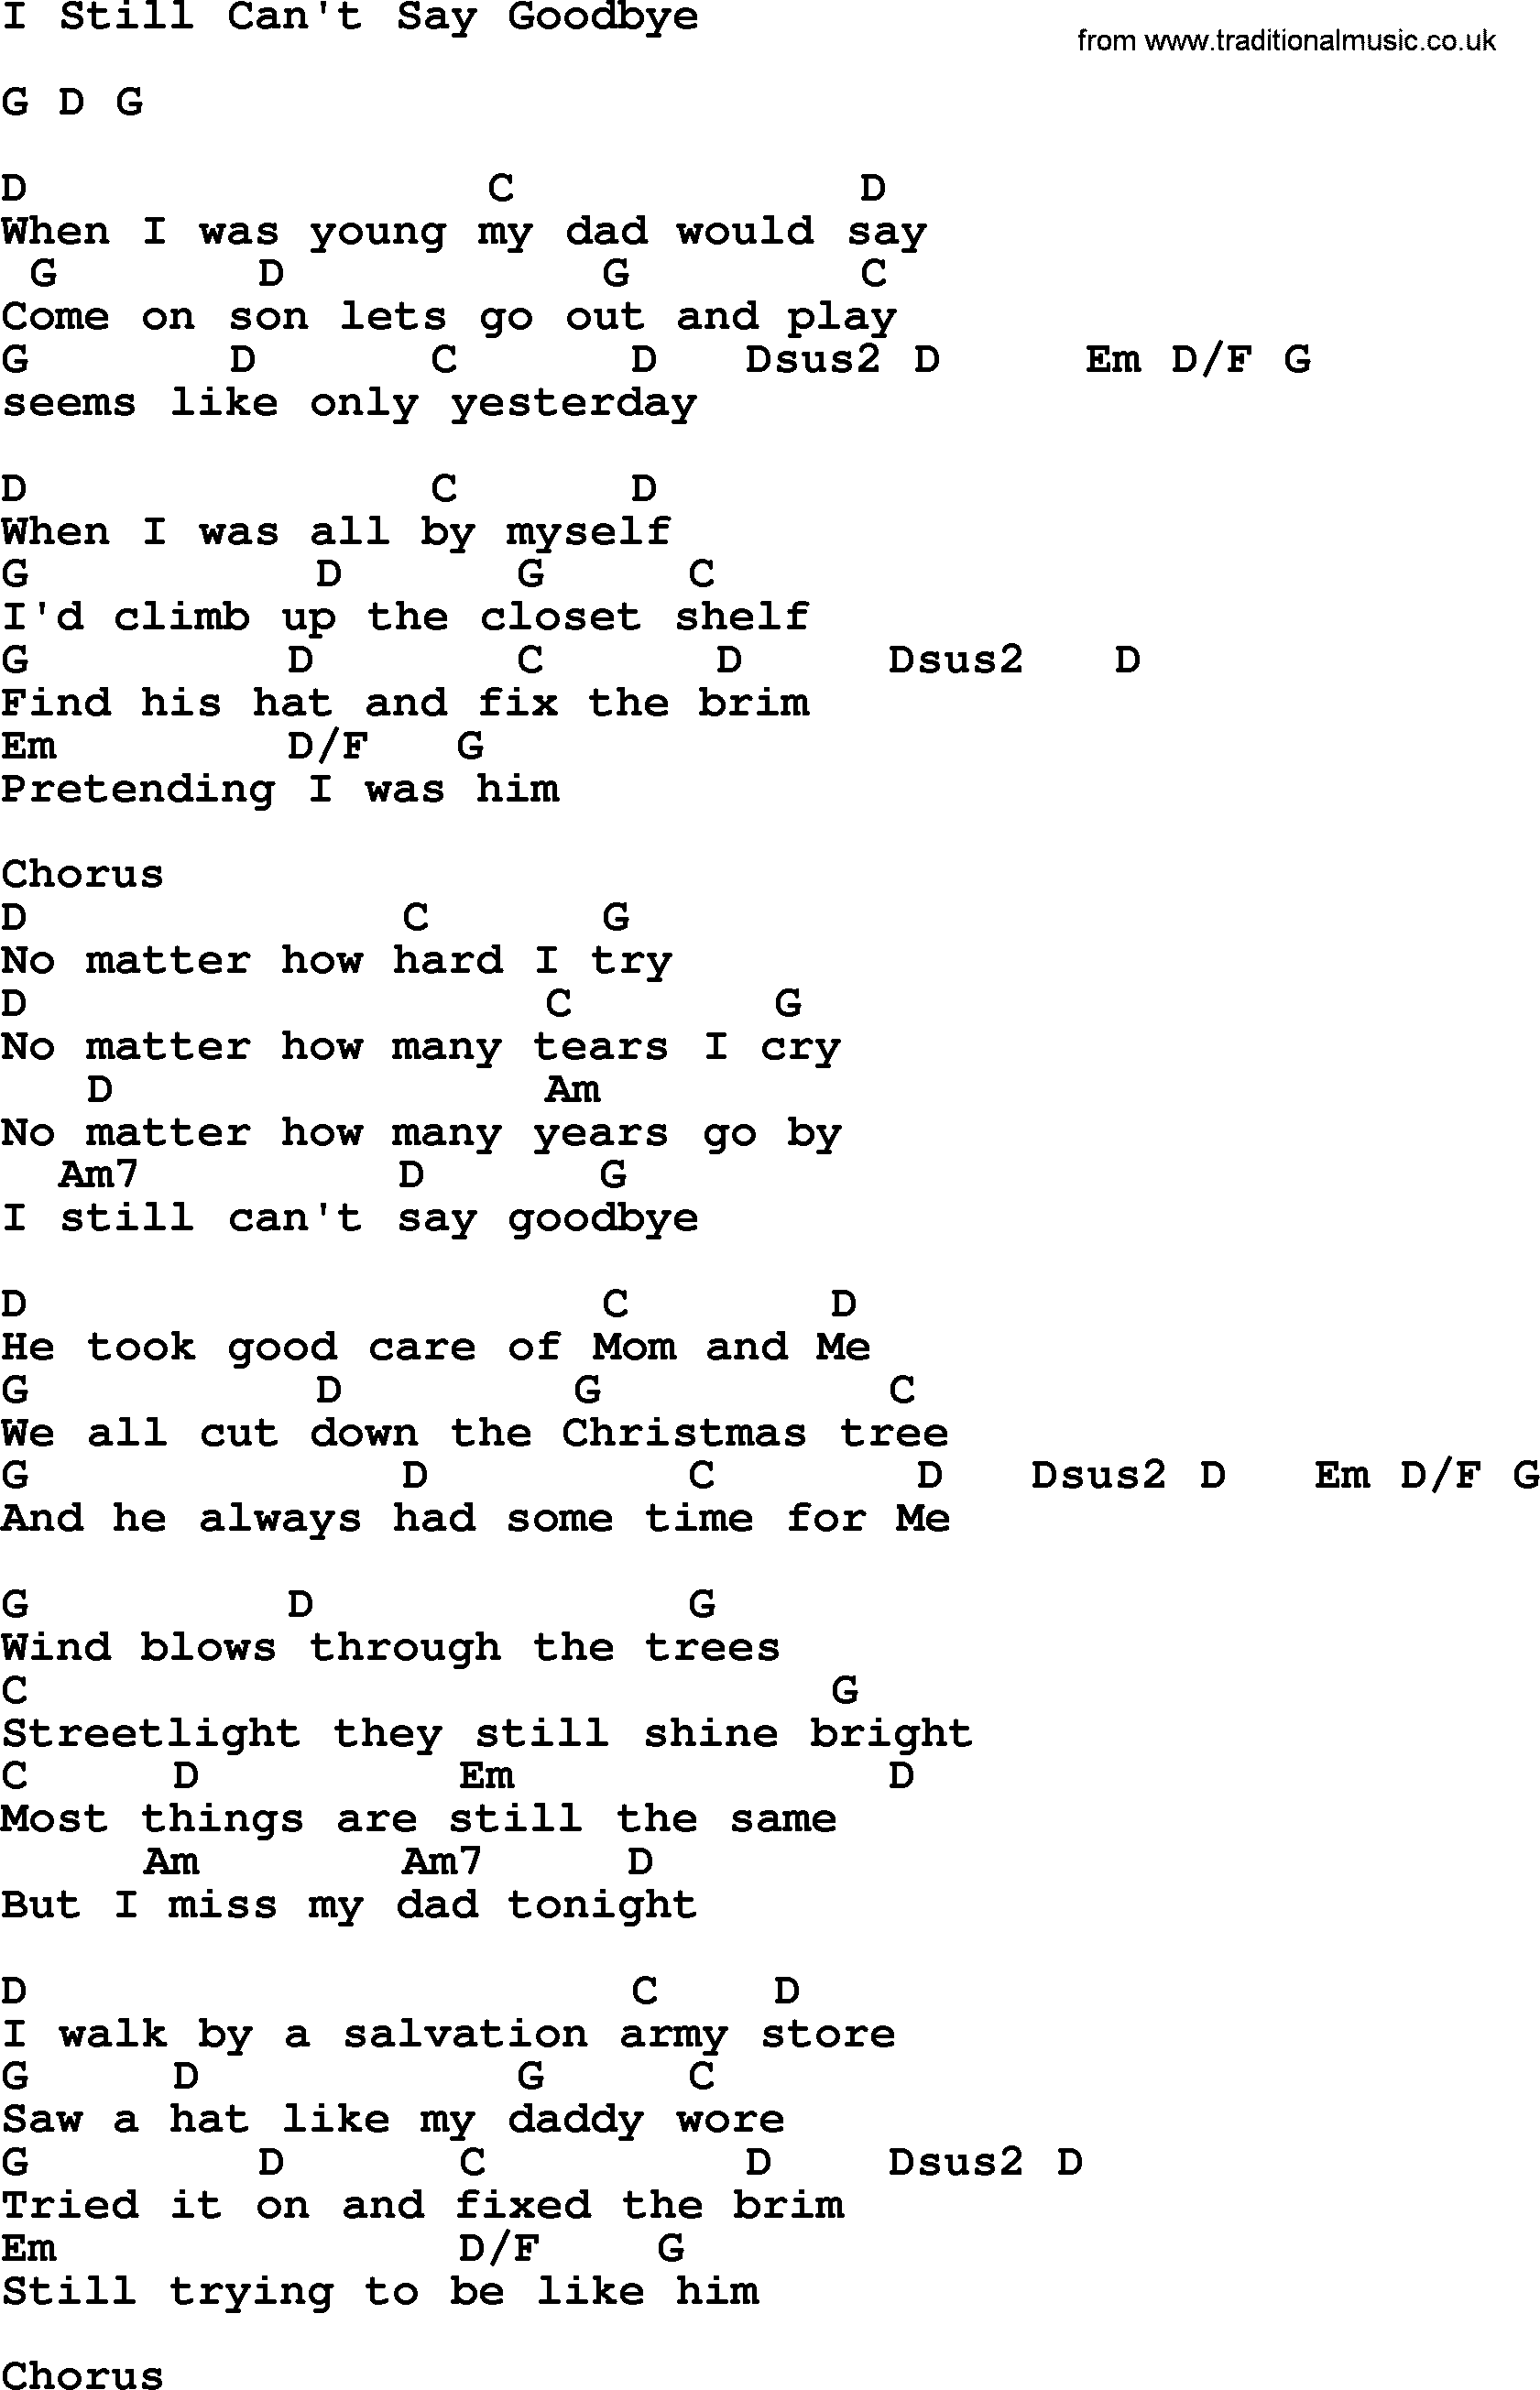 Merle Haggard song: I Still Can't Say Goodbye, lyrics and chords